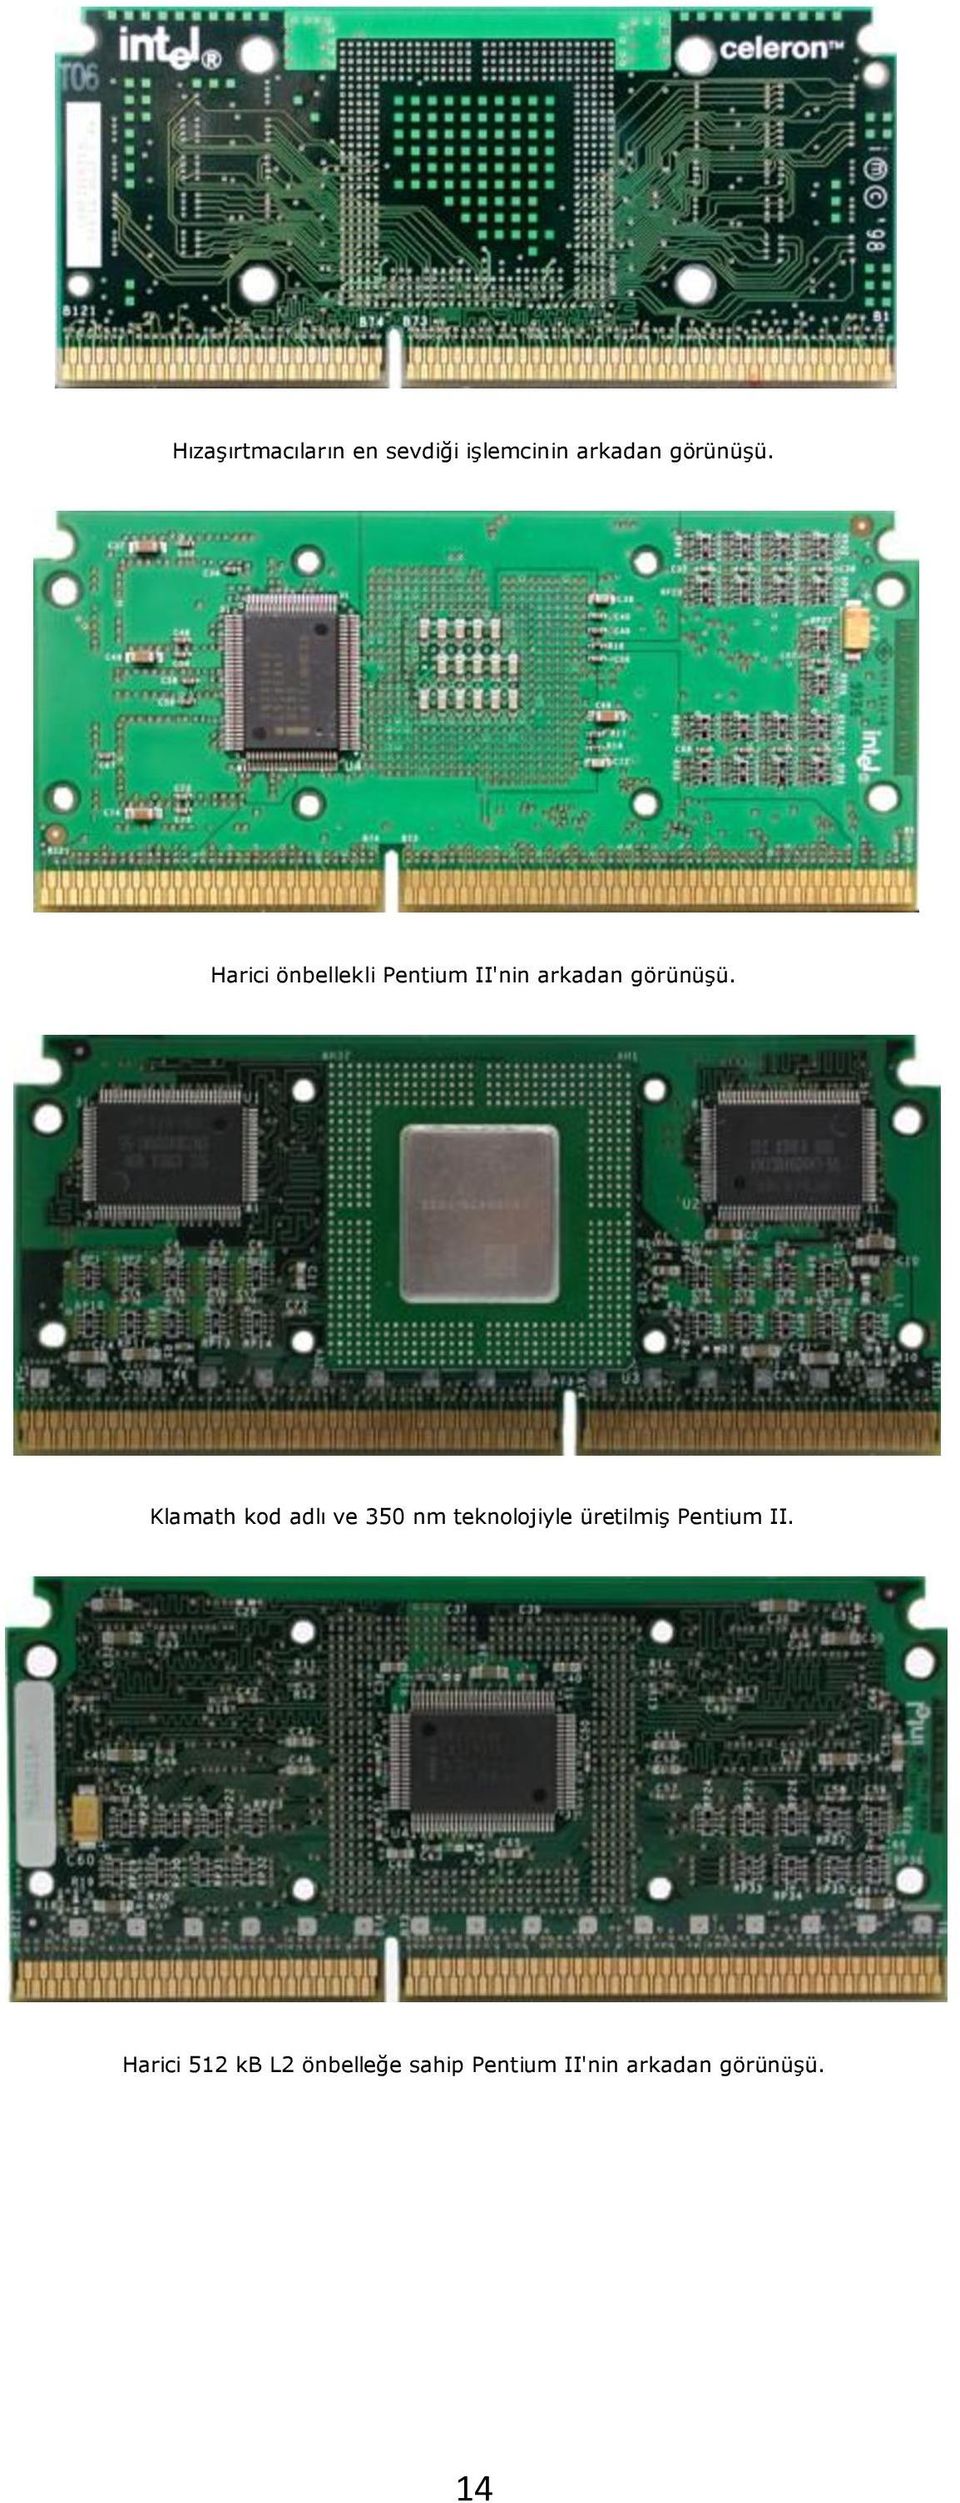 Klamath kod adlı ve 350 nm teknolojiyle üretilmiş Pentium